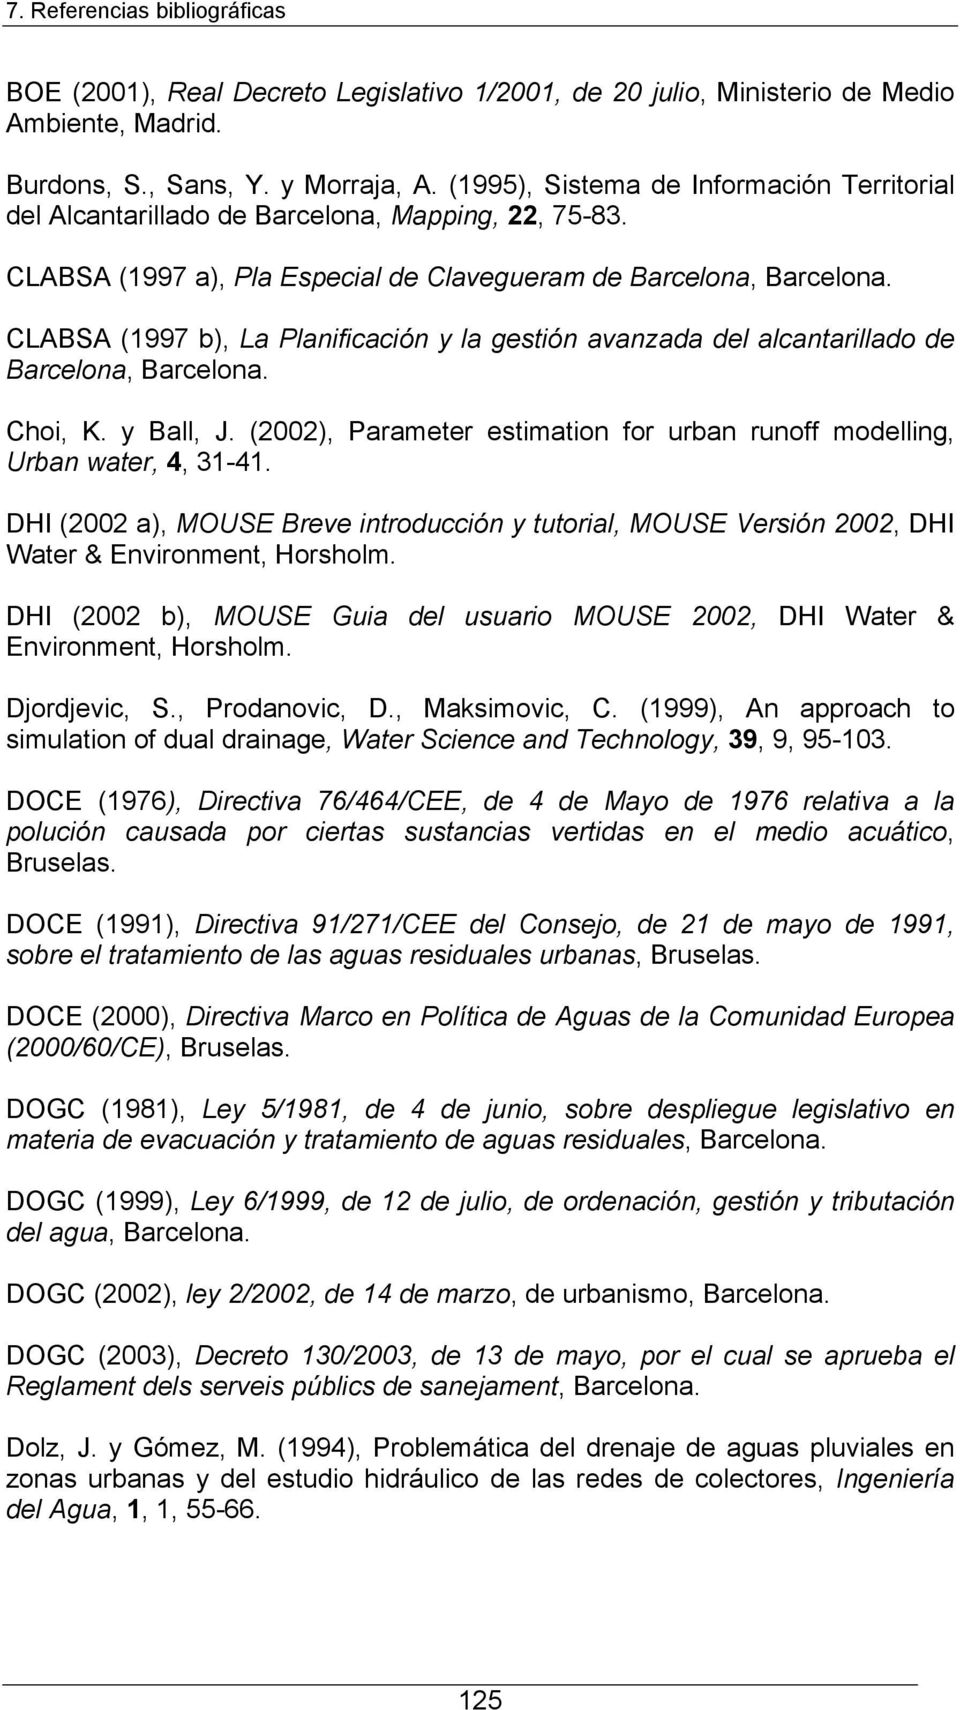 CLABSA (1997 b), La Planificación y la gestión avanzada del alcantarillado de Barcelona, Barcelona. Choi, K. y Ball, J. (2002), Parameter estimation for urban runoff modelling, Urban water, 4, 31-41.